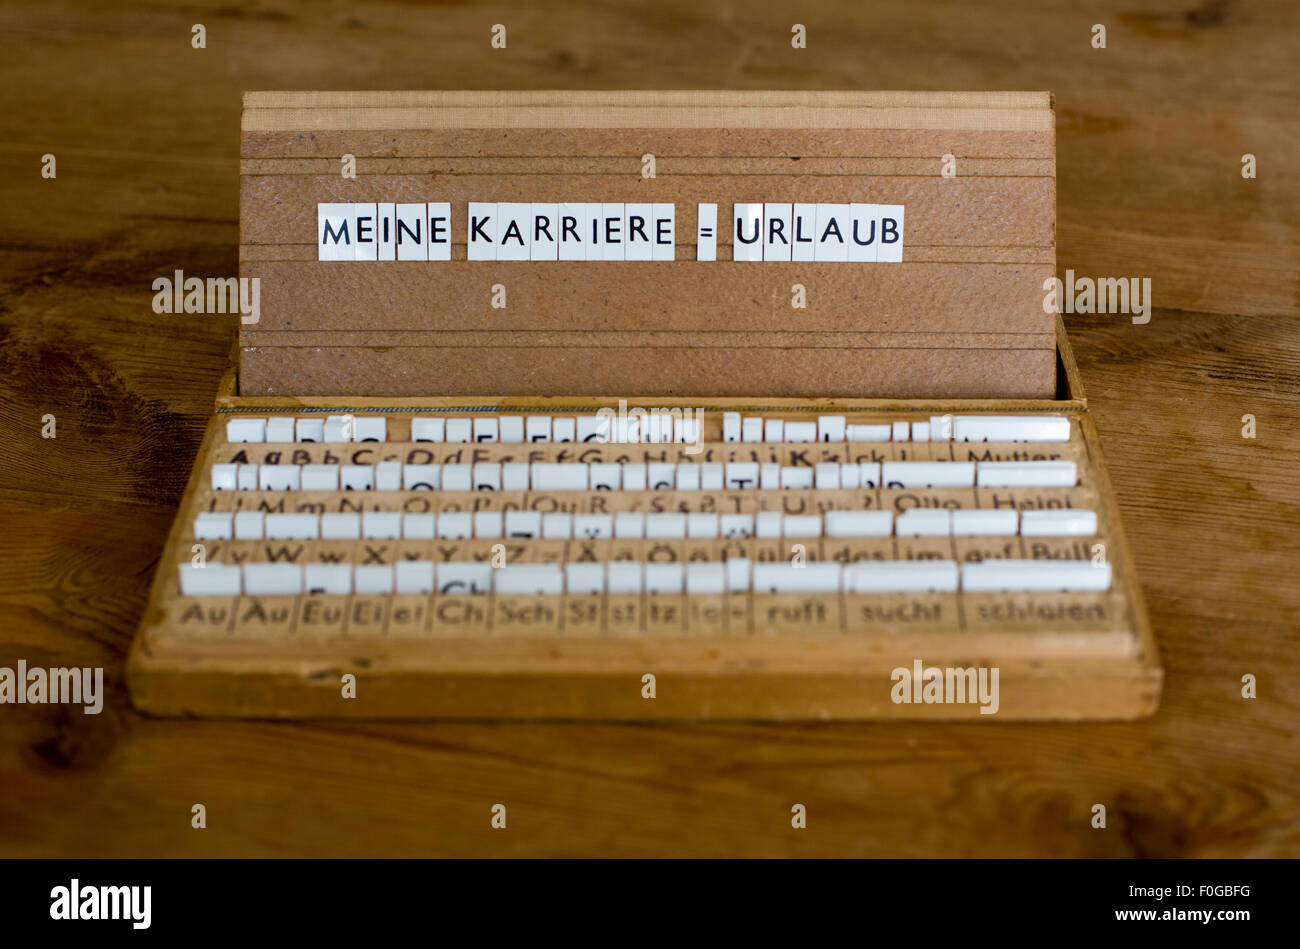 Une boîte aux lettres avec le texte allemand : 'Meine Karriere =Urlaub' (ma carrière  = vacances) Banque D'Images